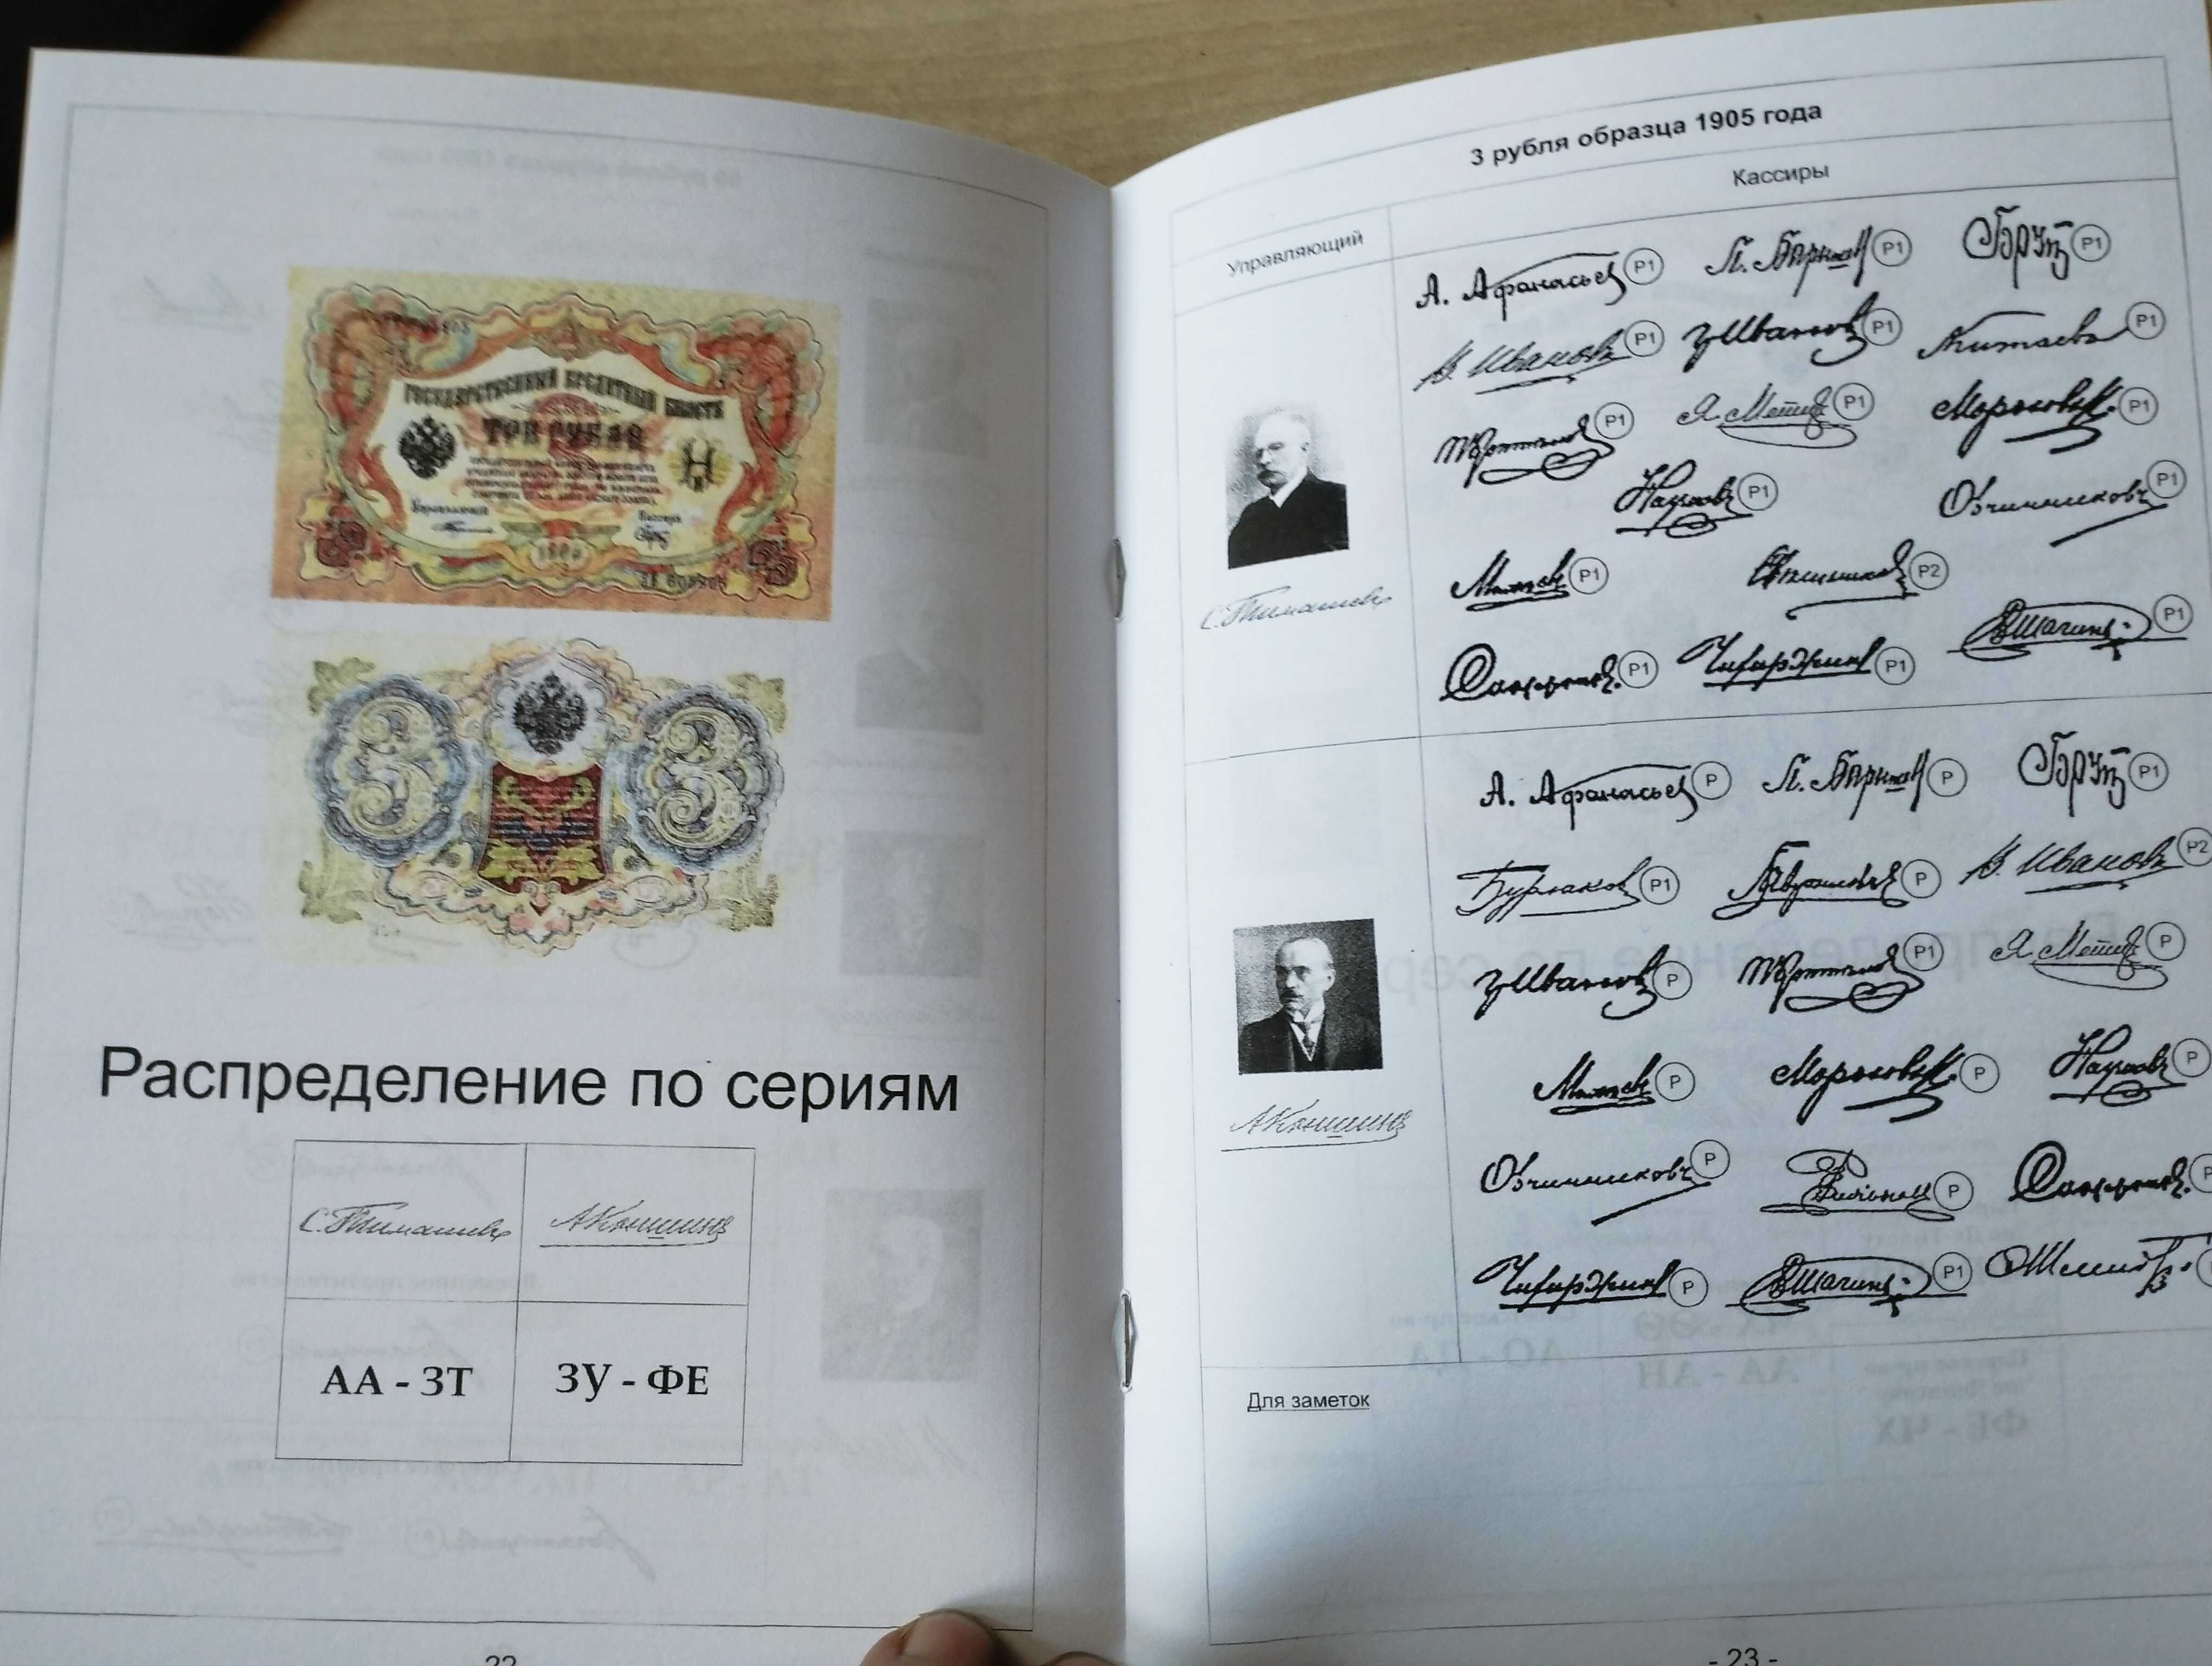 Katalog "Podpisy na banknotach rosyjskich"